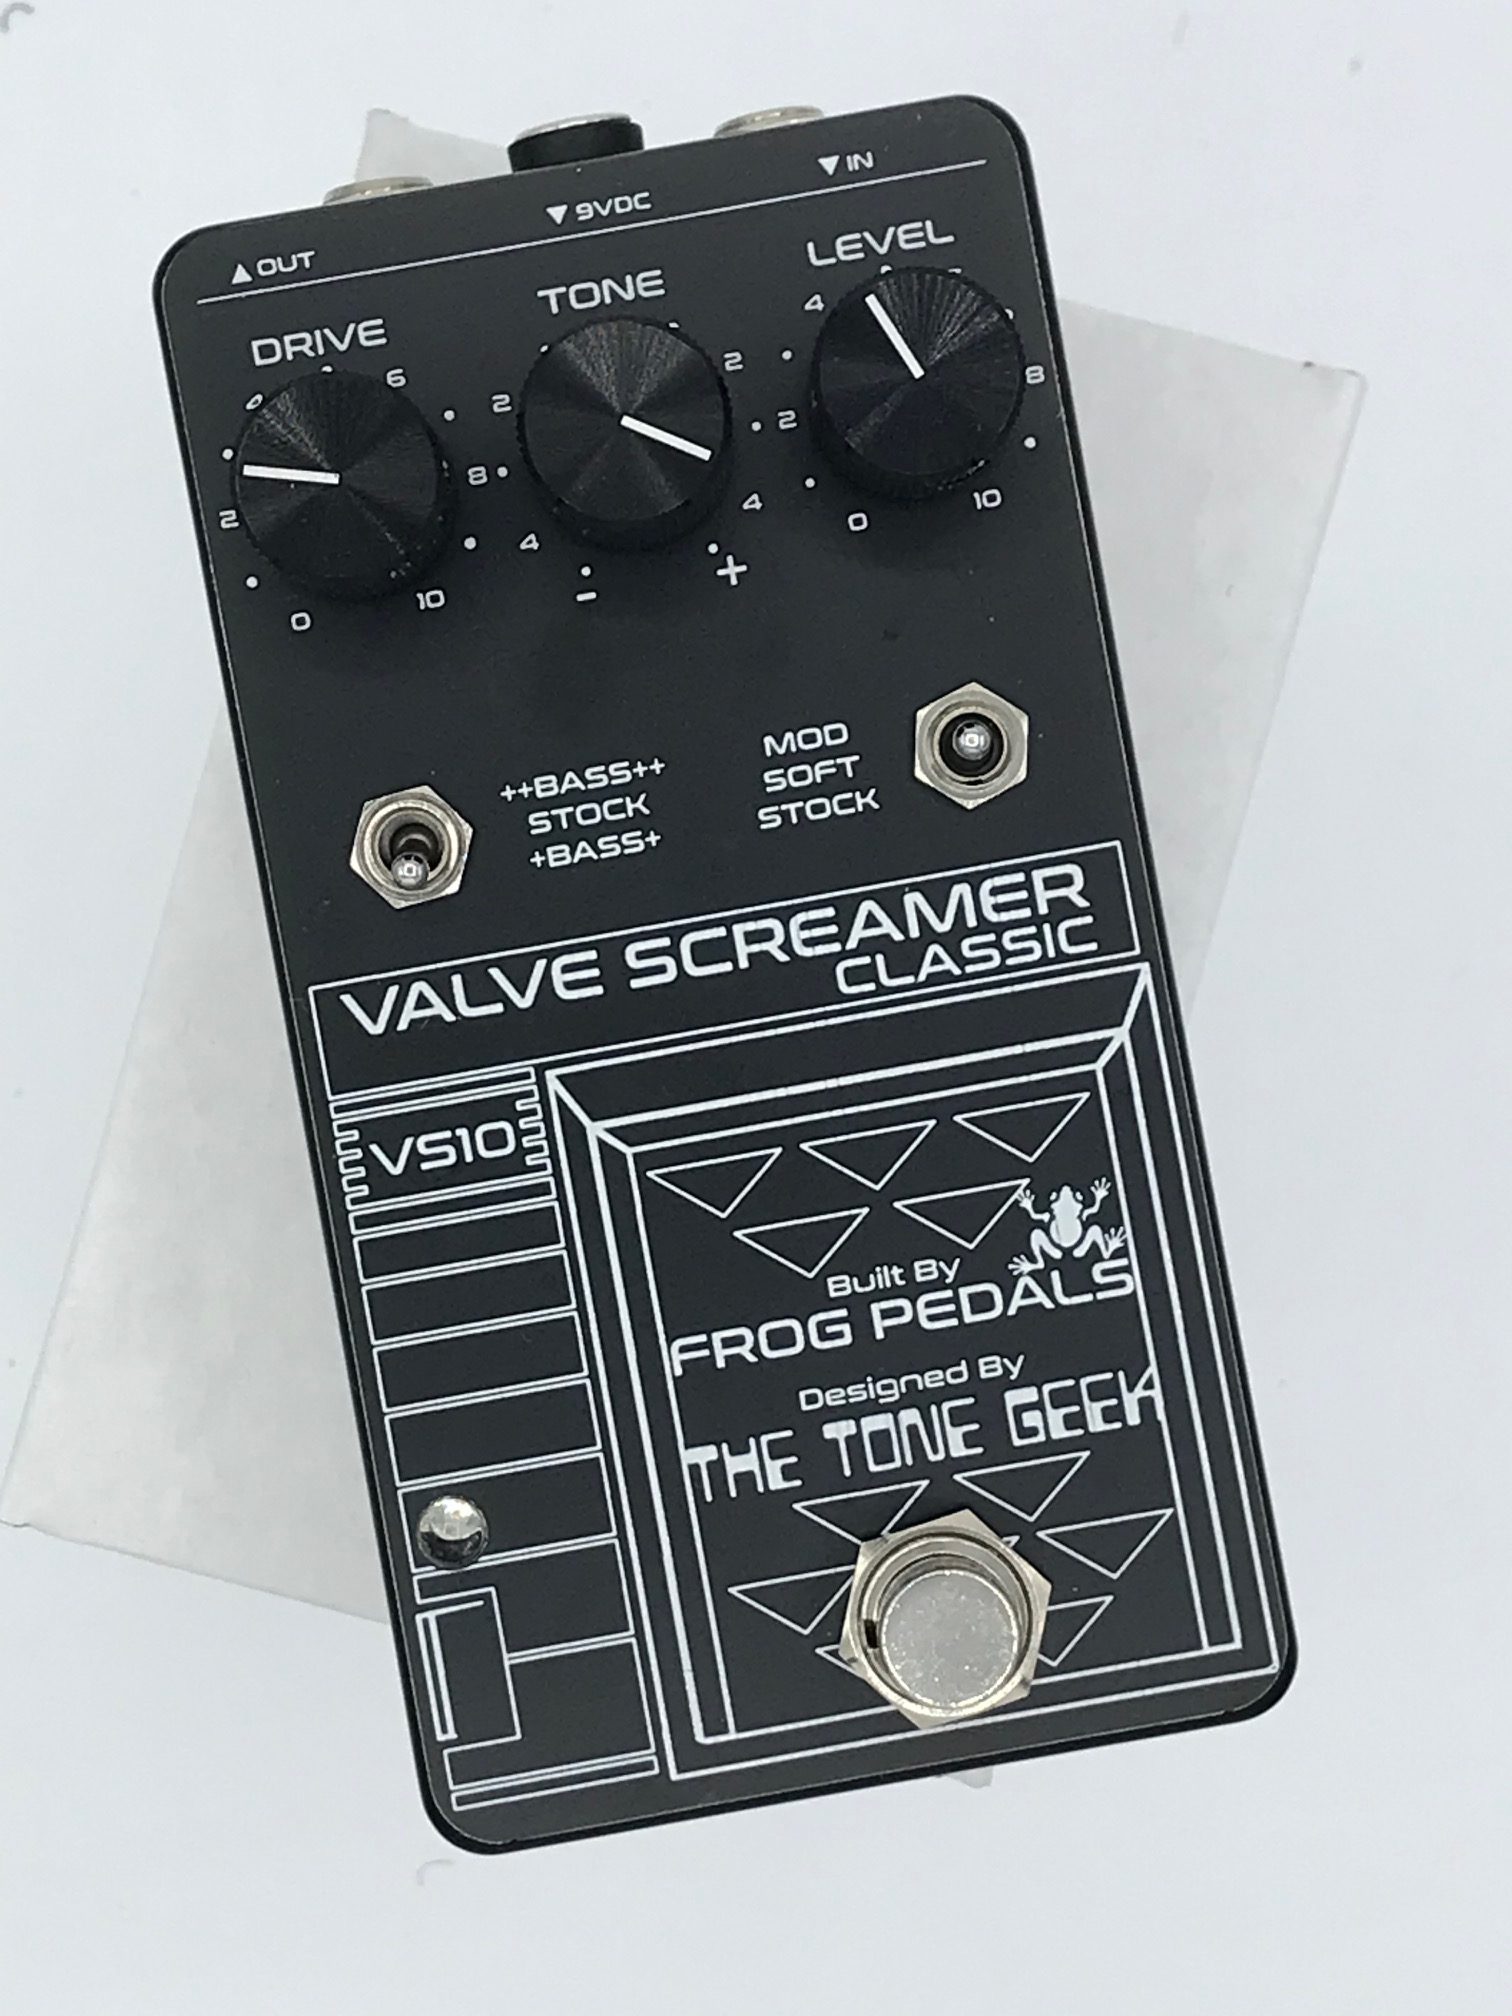 Valve Screamer VS10 - Tube Screamer Inspired Overdrive - TheToneGeek